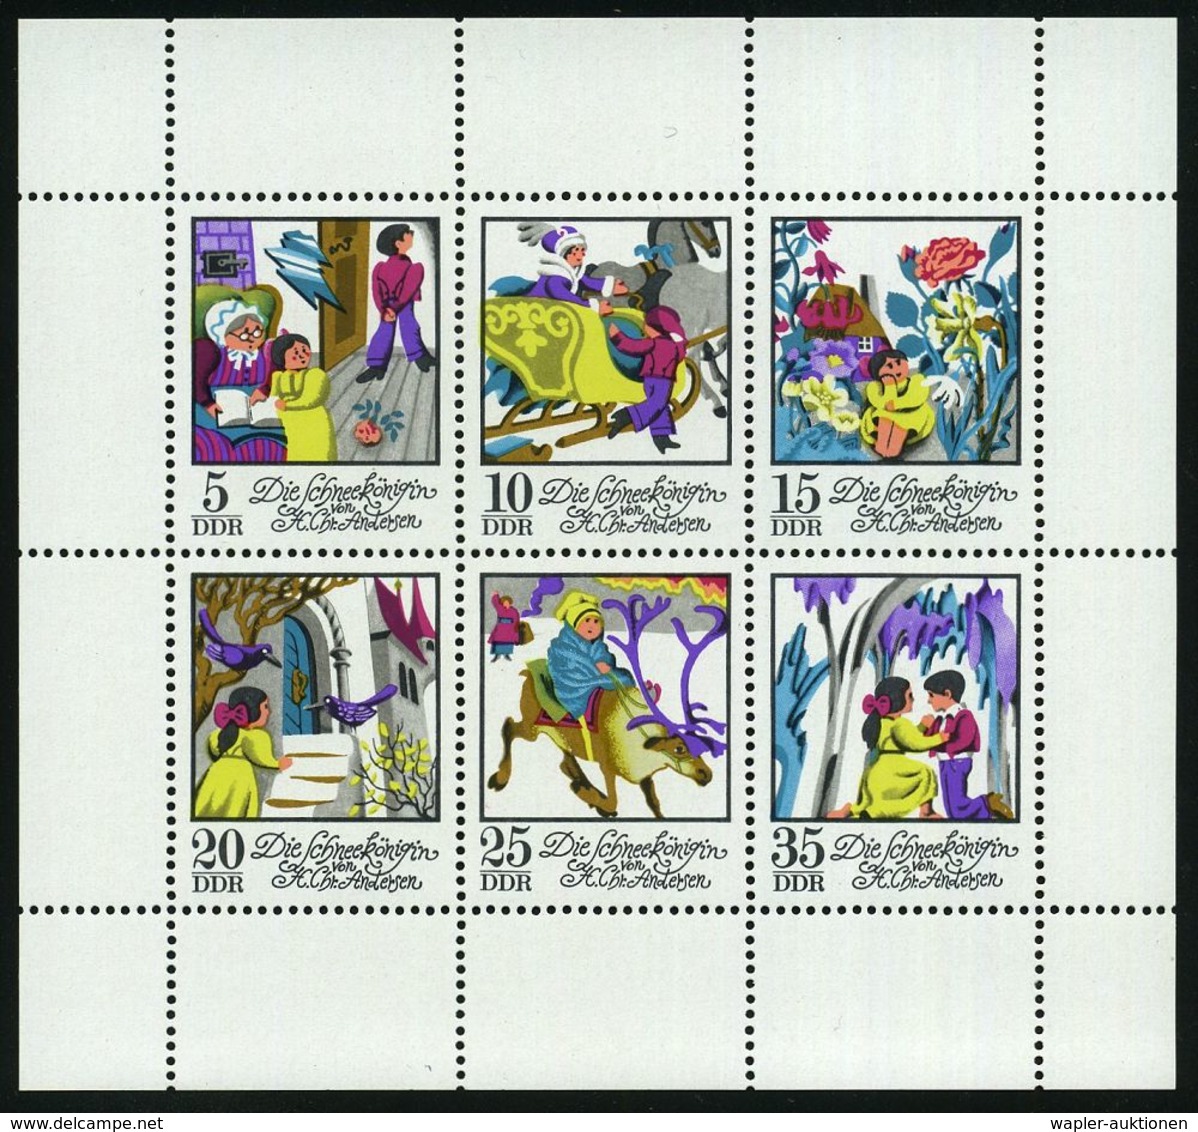 D.D.R. 1972 Kleinbogen "Die Schneekönigin" ,  P h a s e n d r u c k e  (Einzelfaben bis Endphase alle Farben)  6 verschi